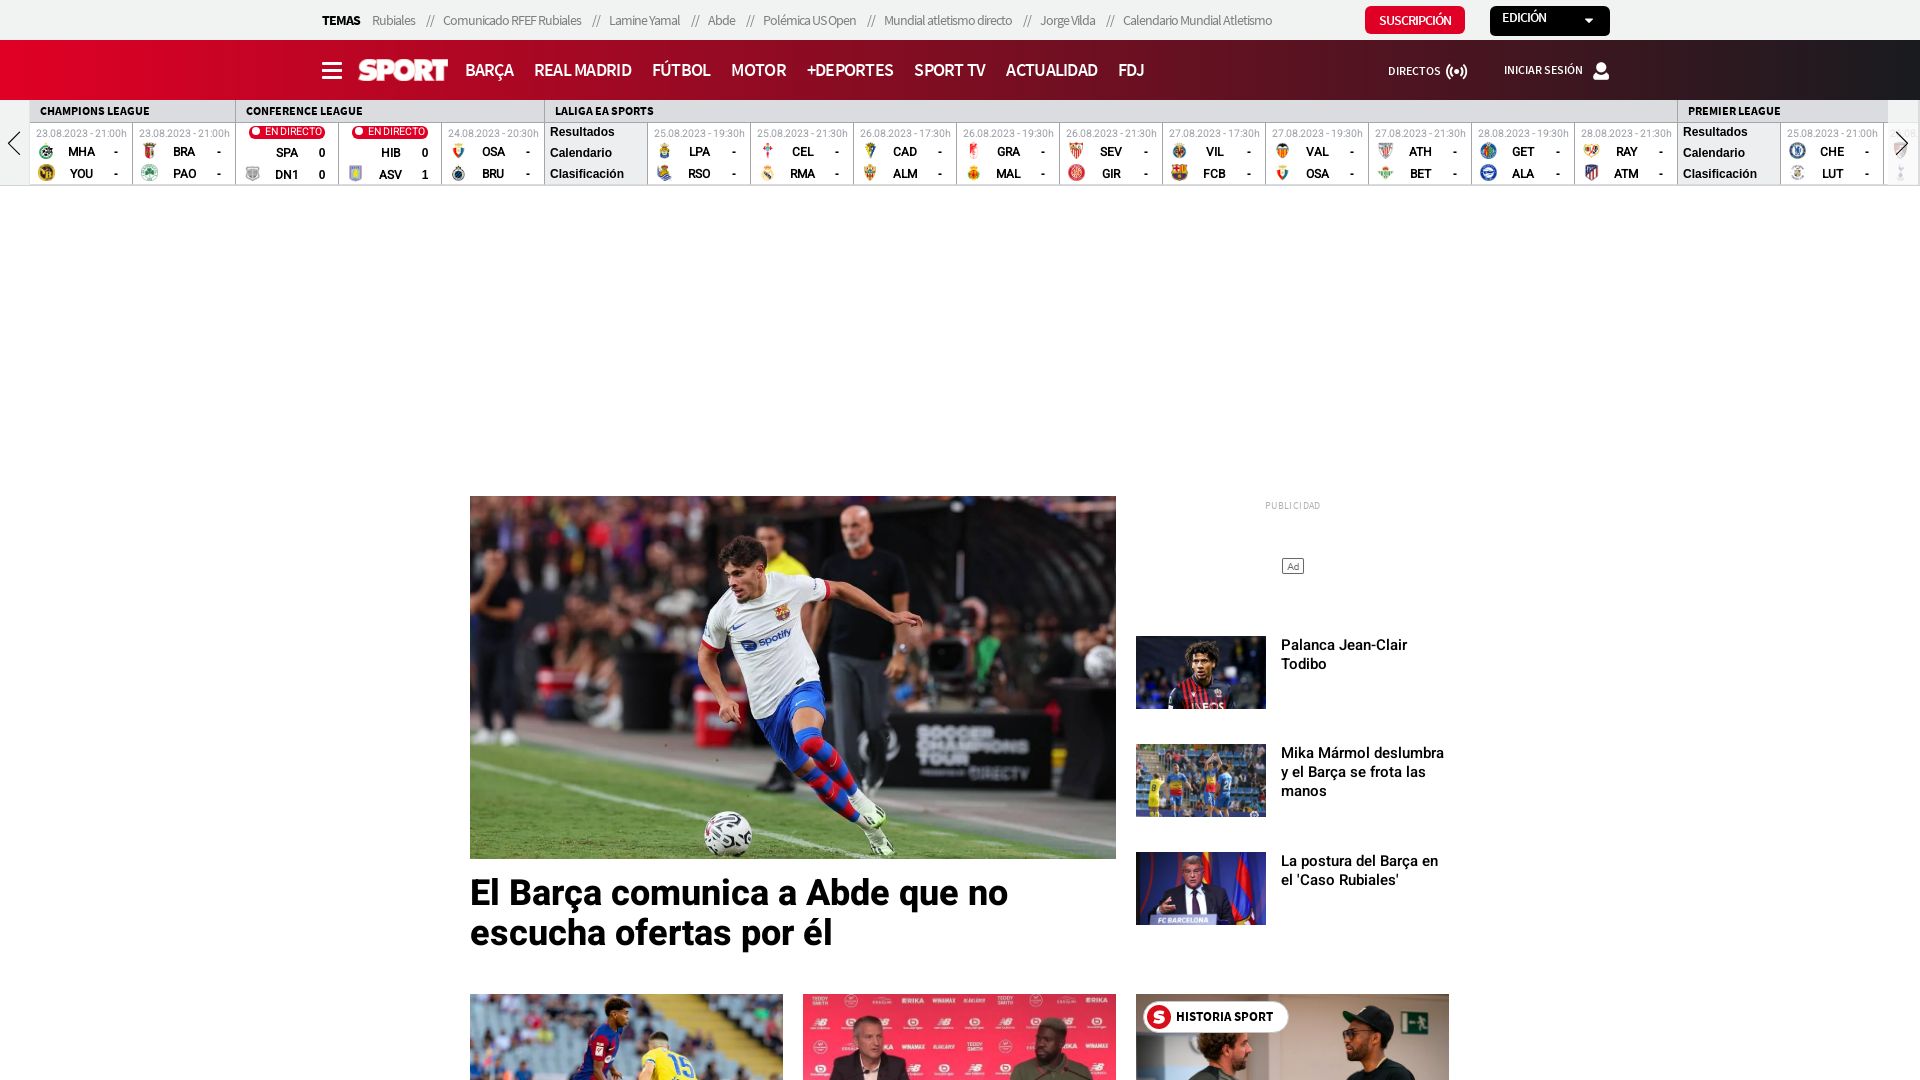 вебсайт sport.es Є   ONLINE